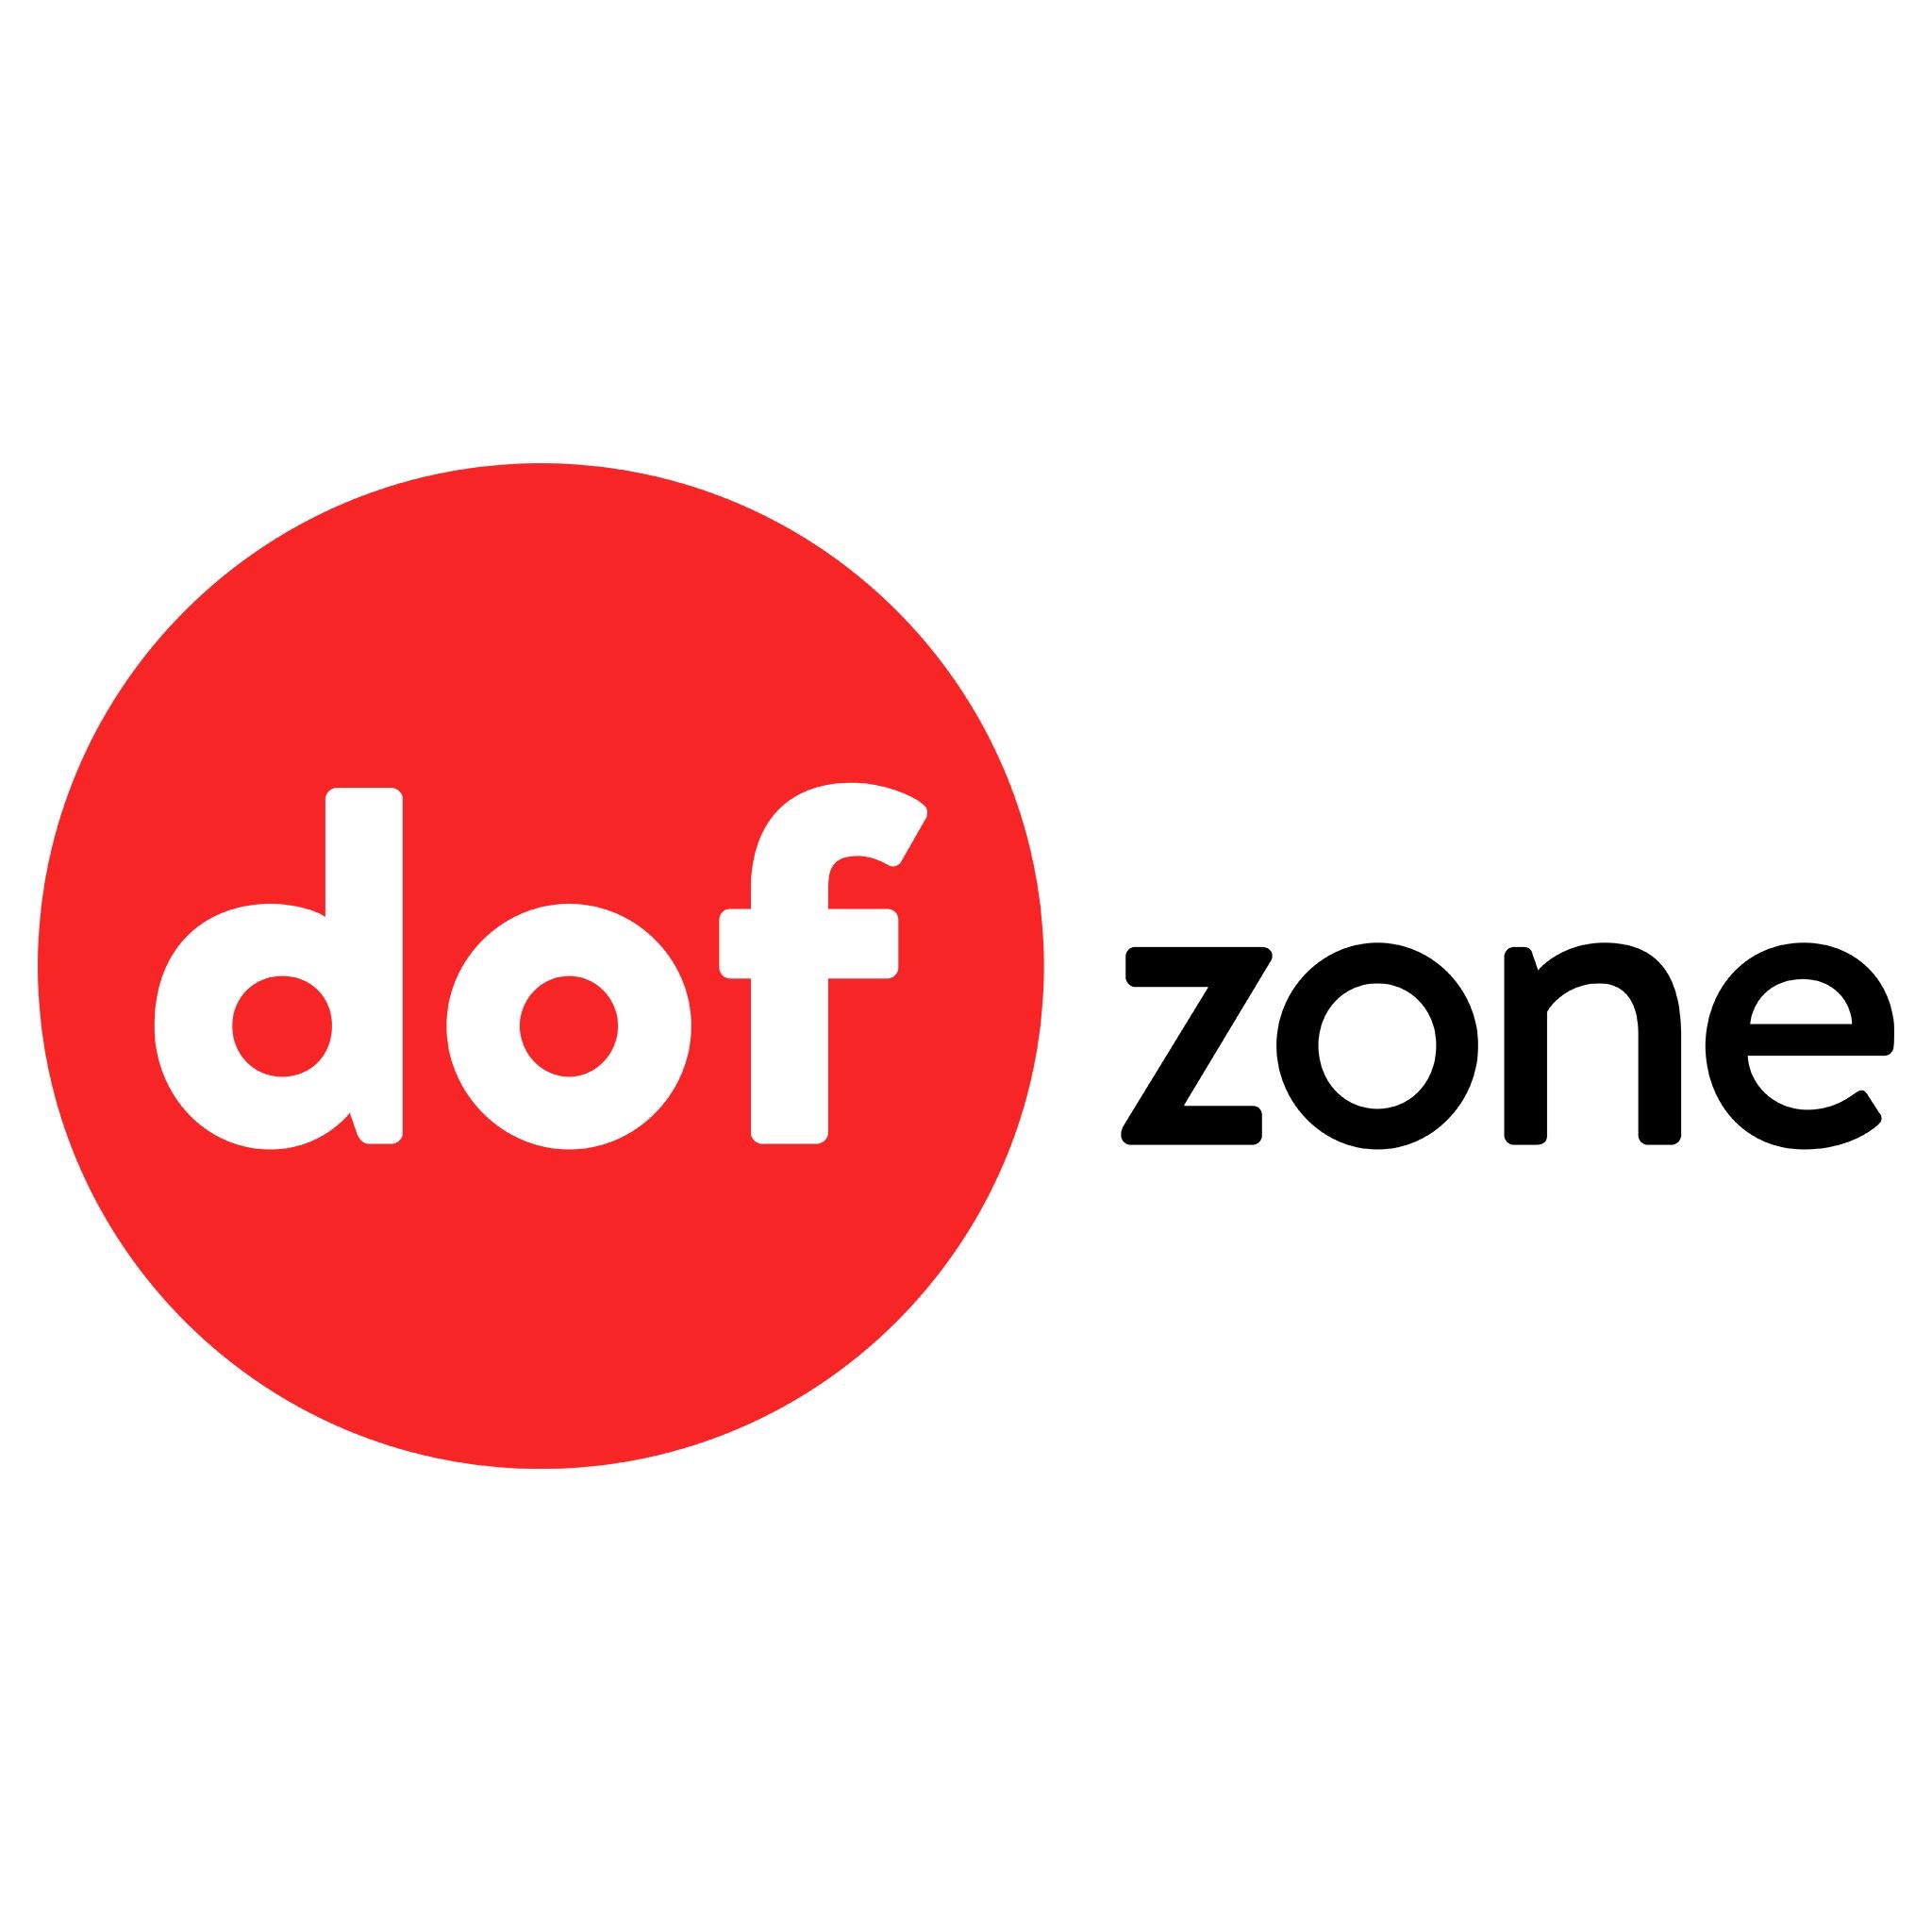 DOFzone